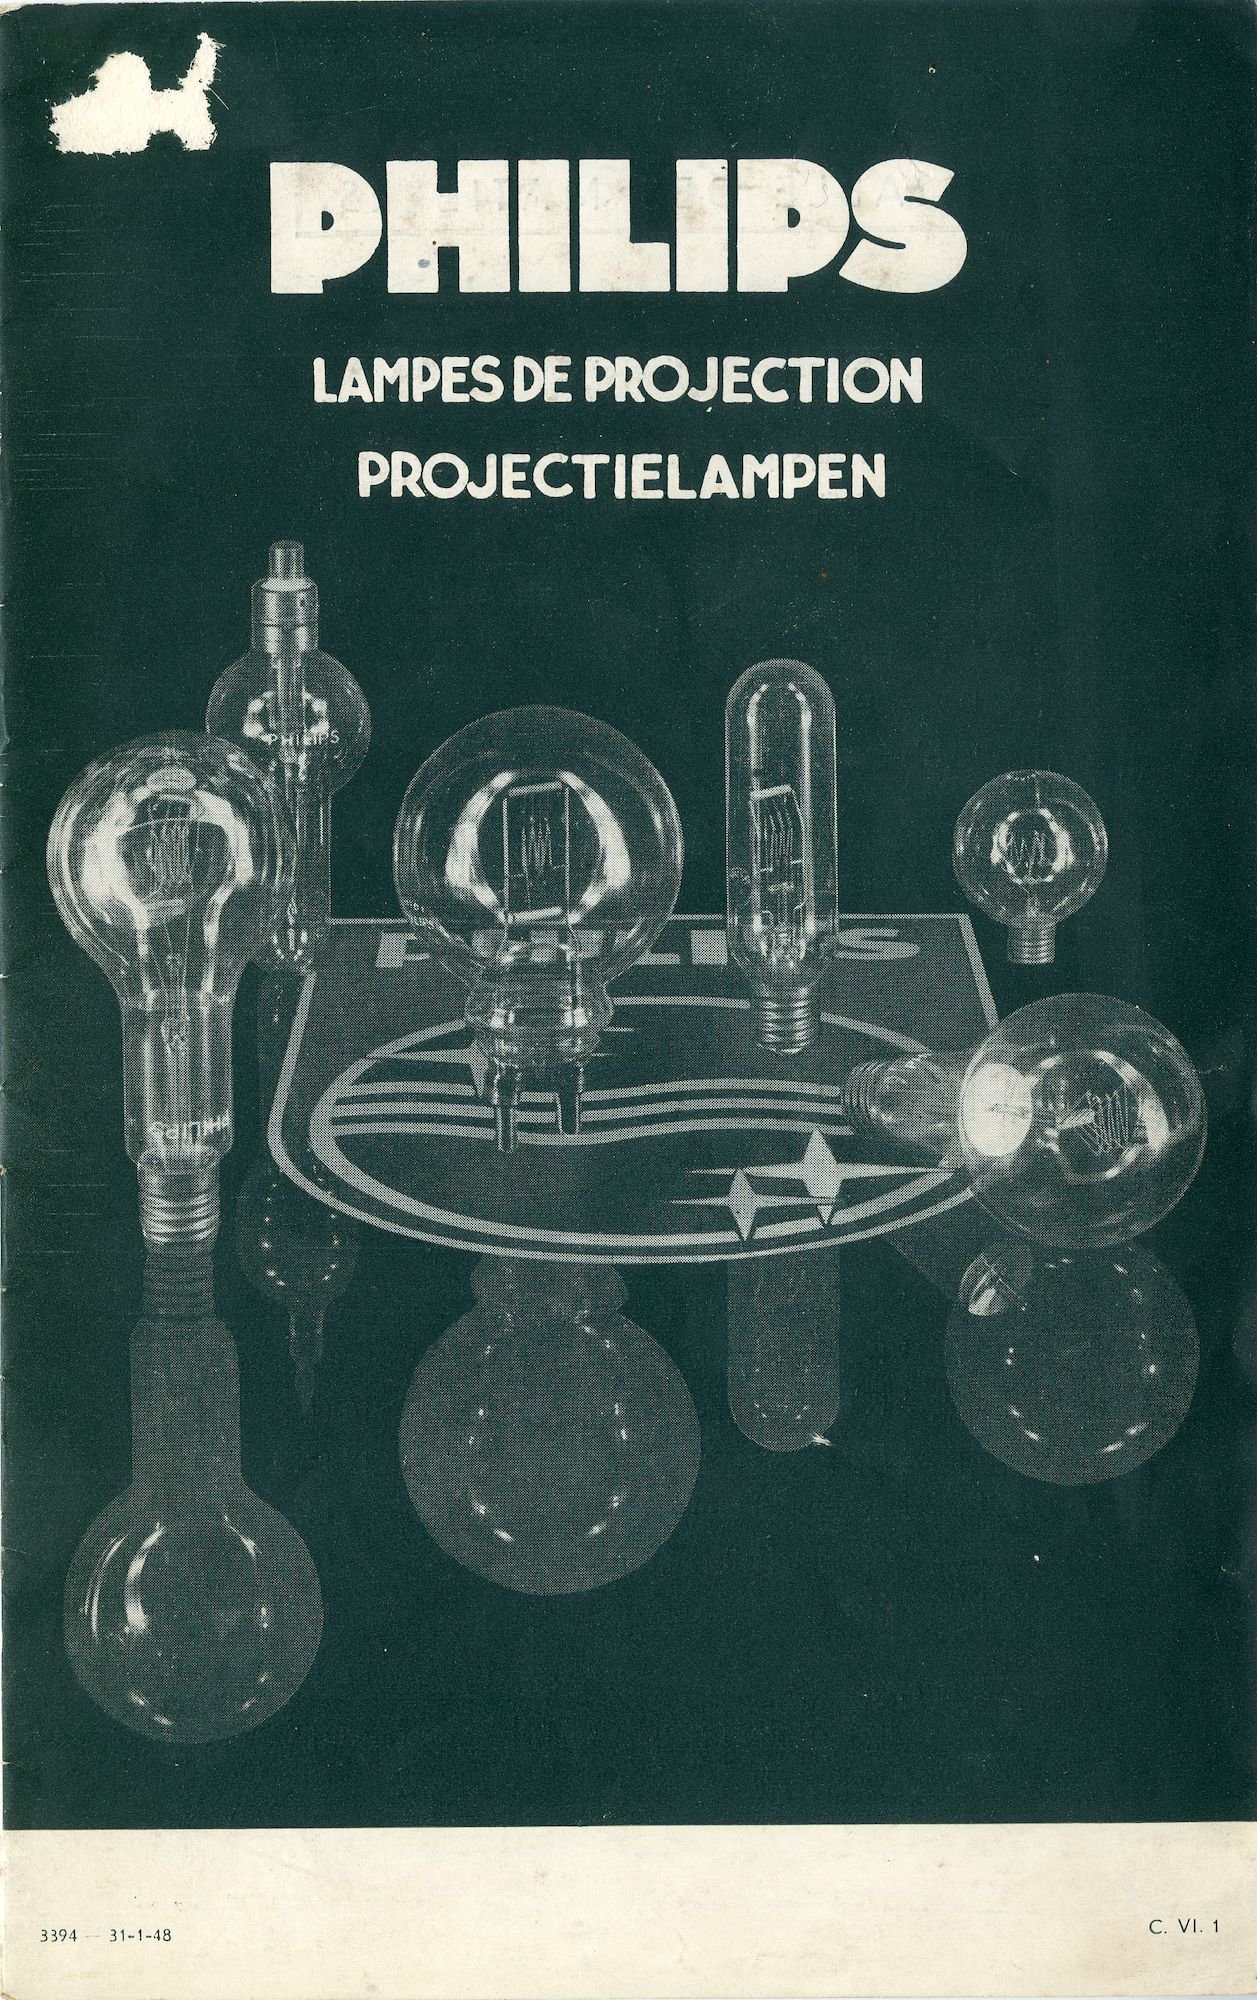 Philips, Lampes de projection. Projectielampen